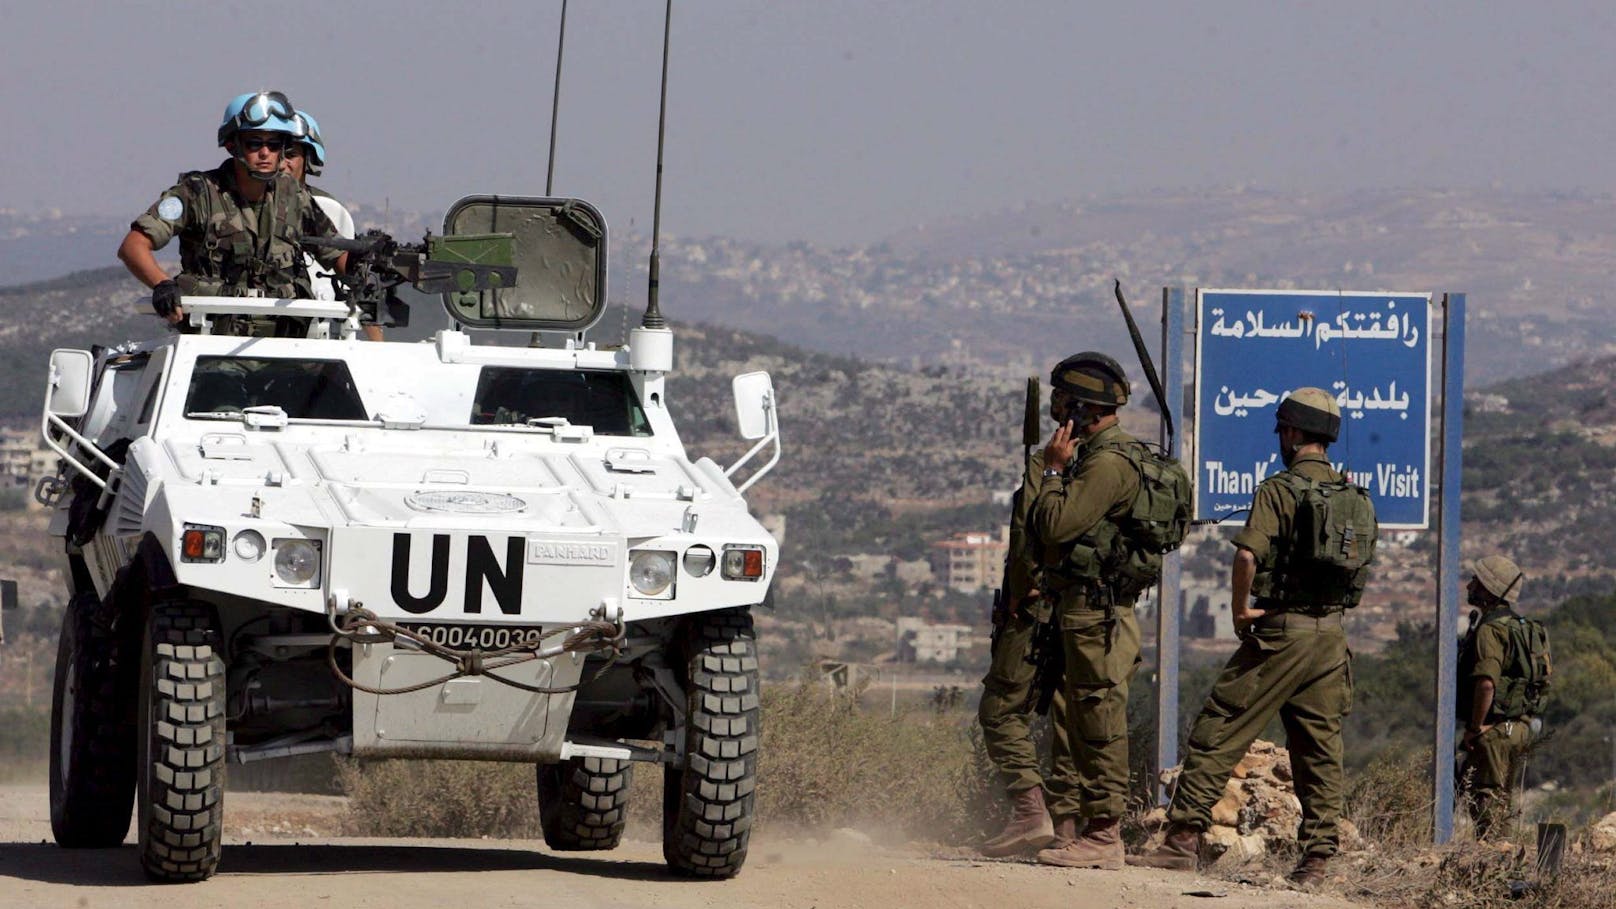 Gefangene in Windeln – UN übt heftige Kritik an Israel